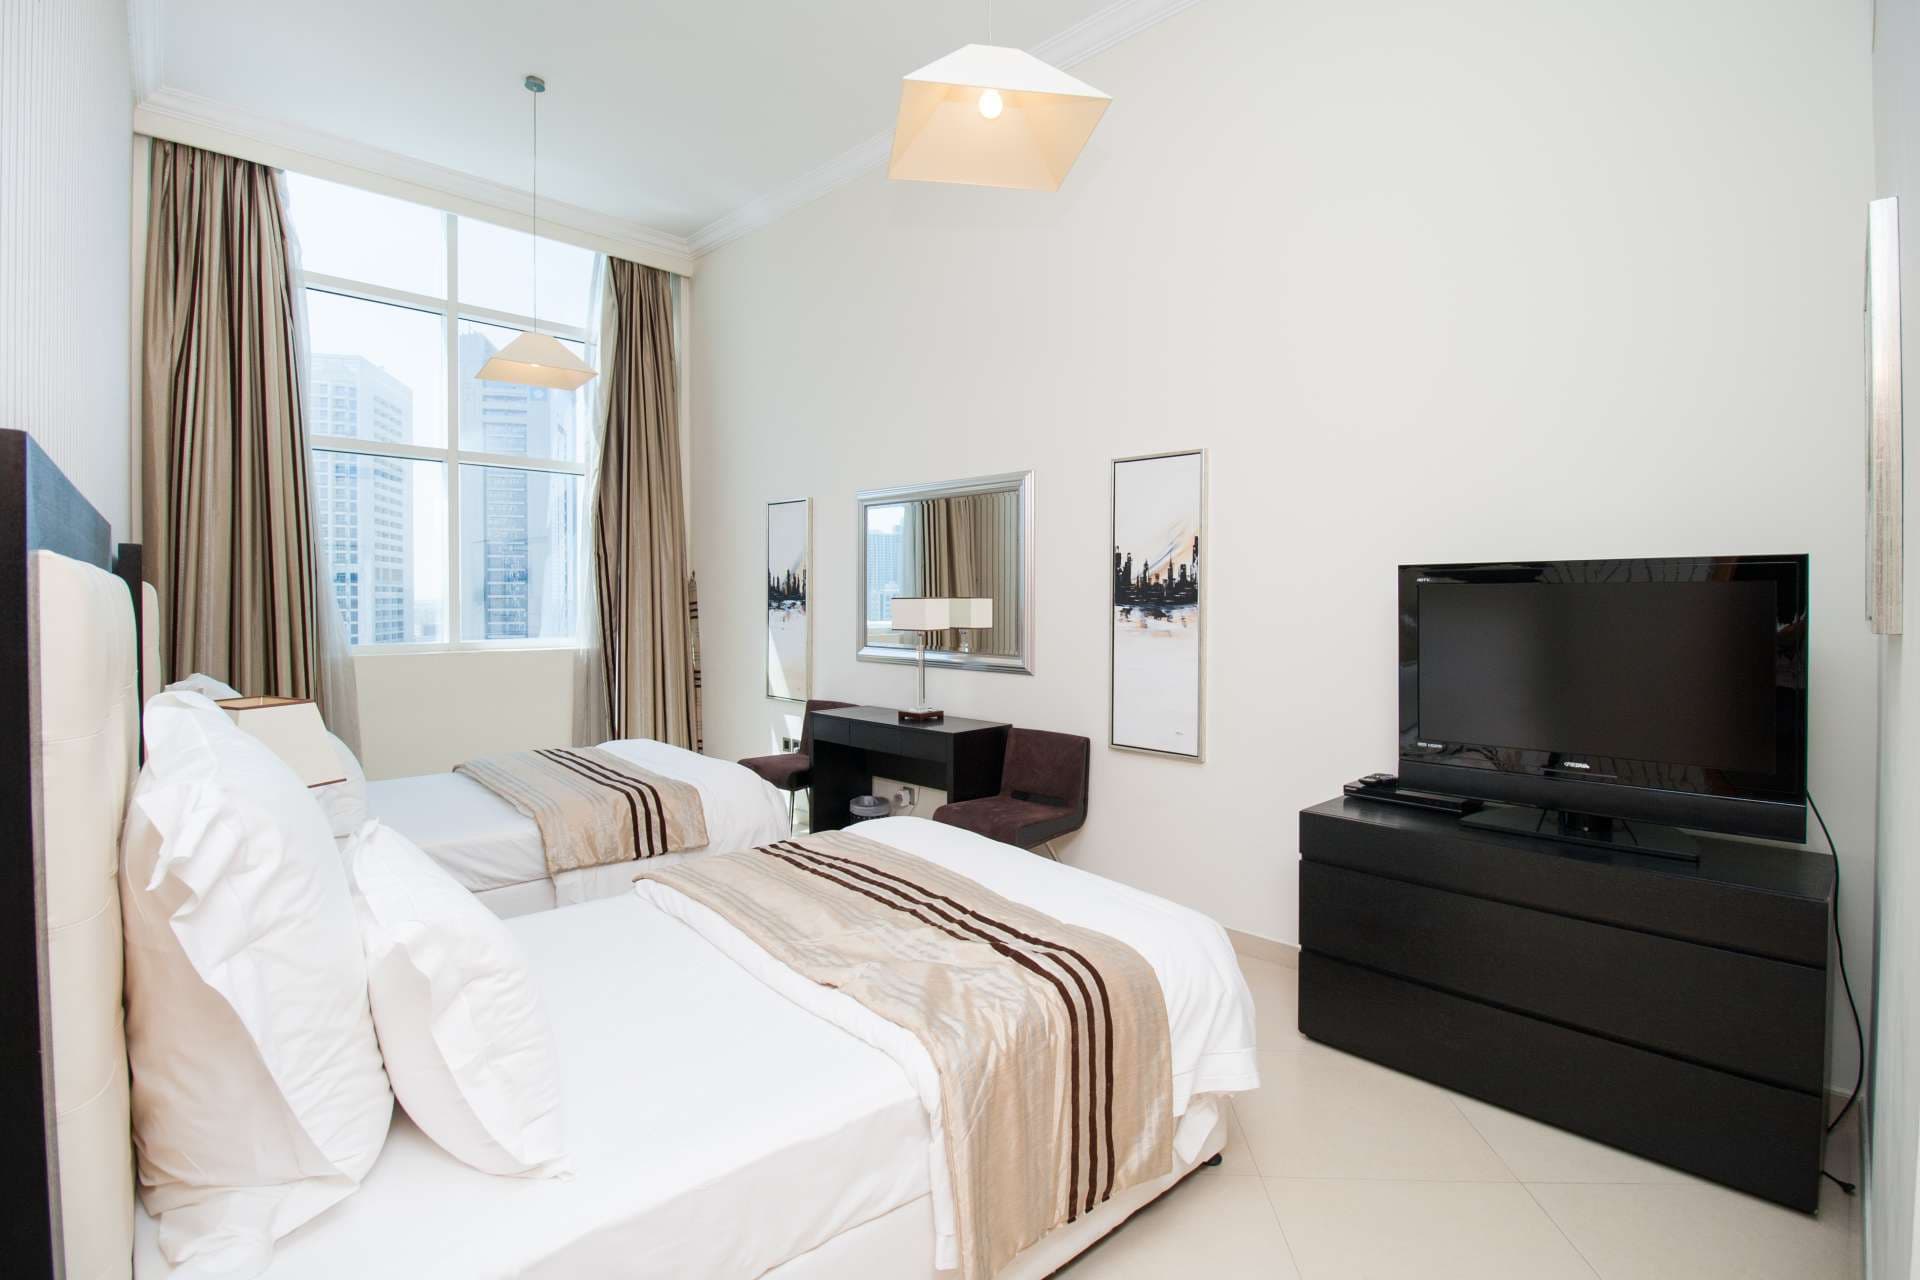 2 Bedroom Apartment For Rent Dorra Bay Lp04870 Ce842519dda0a00.jpg